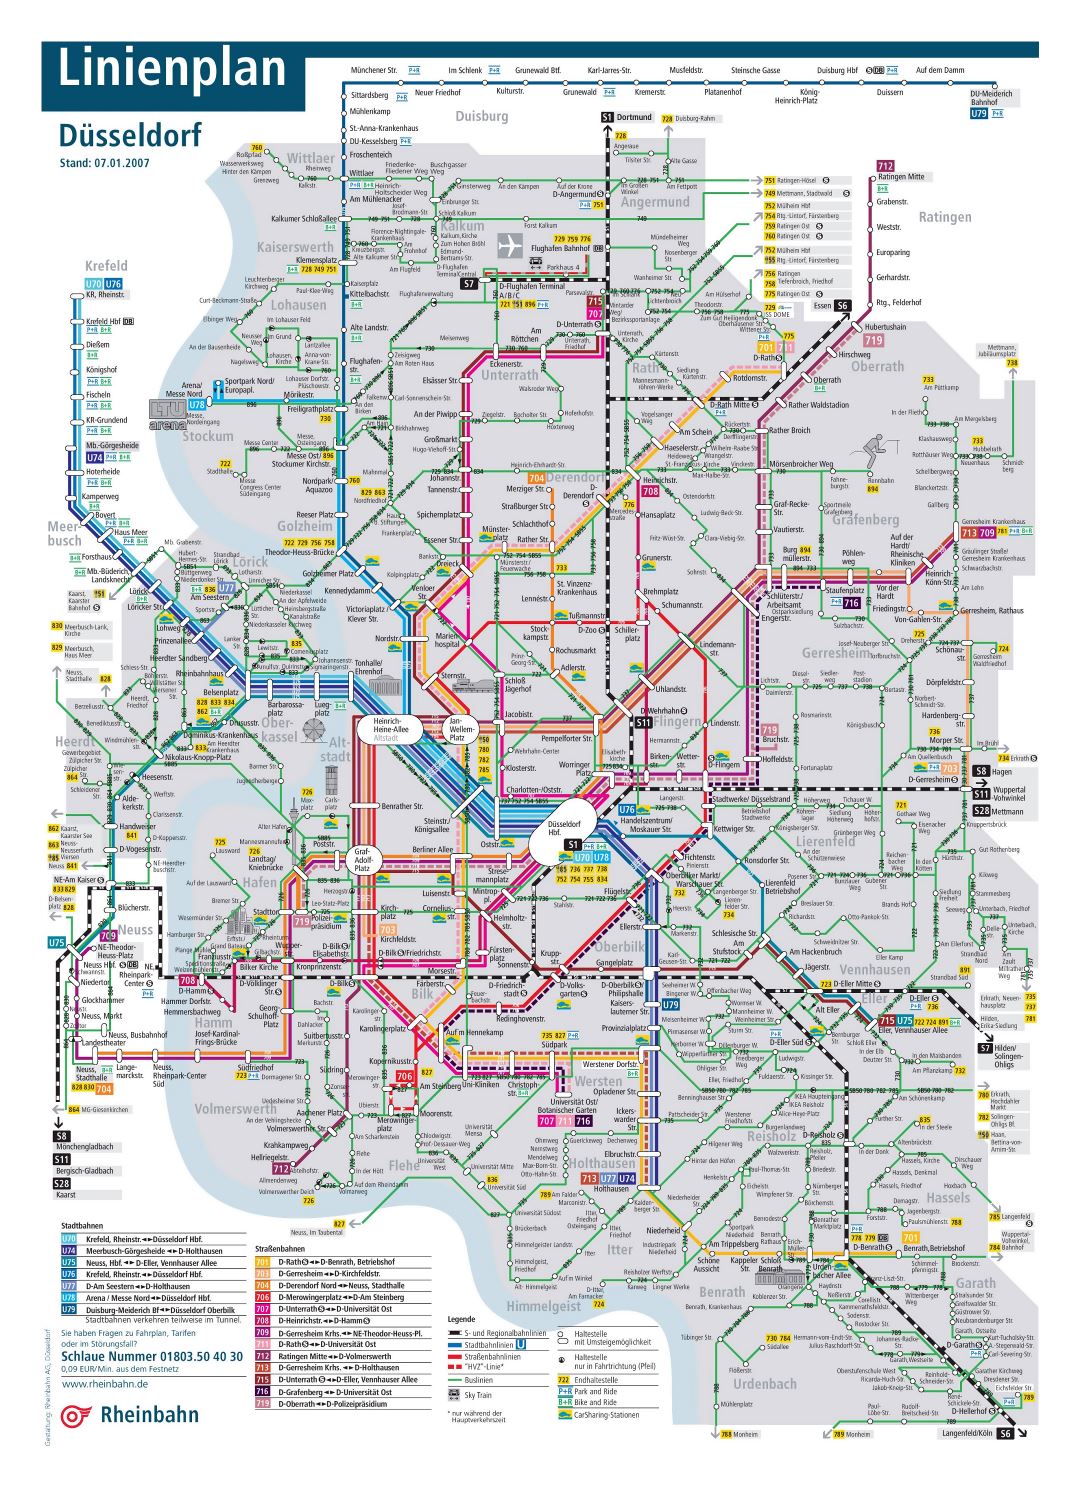 Mapa grande transporte público detallado de la ciudad de Dusseldorf